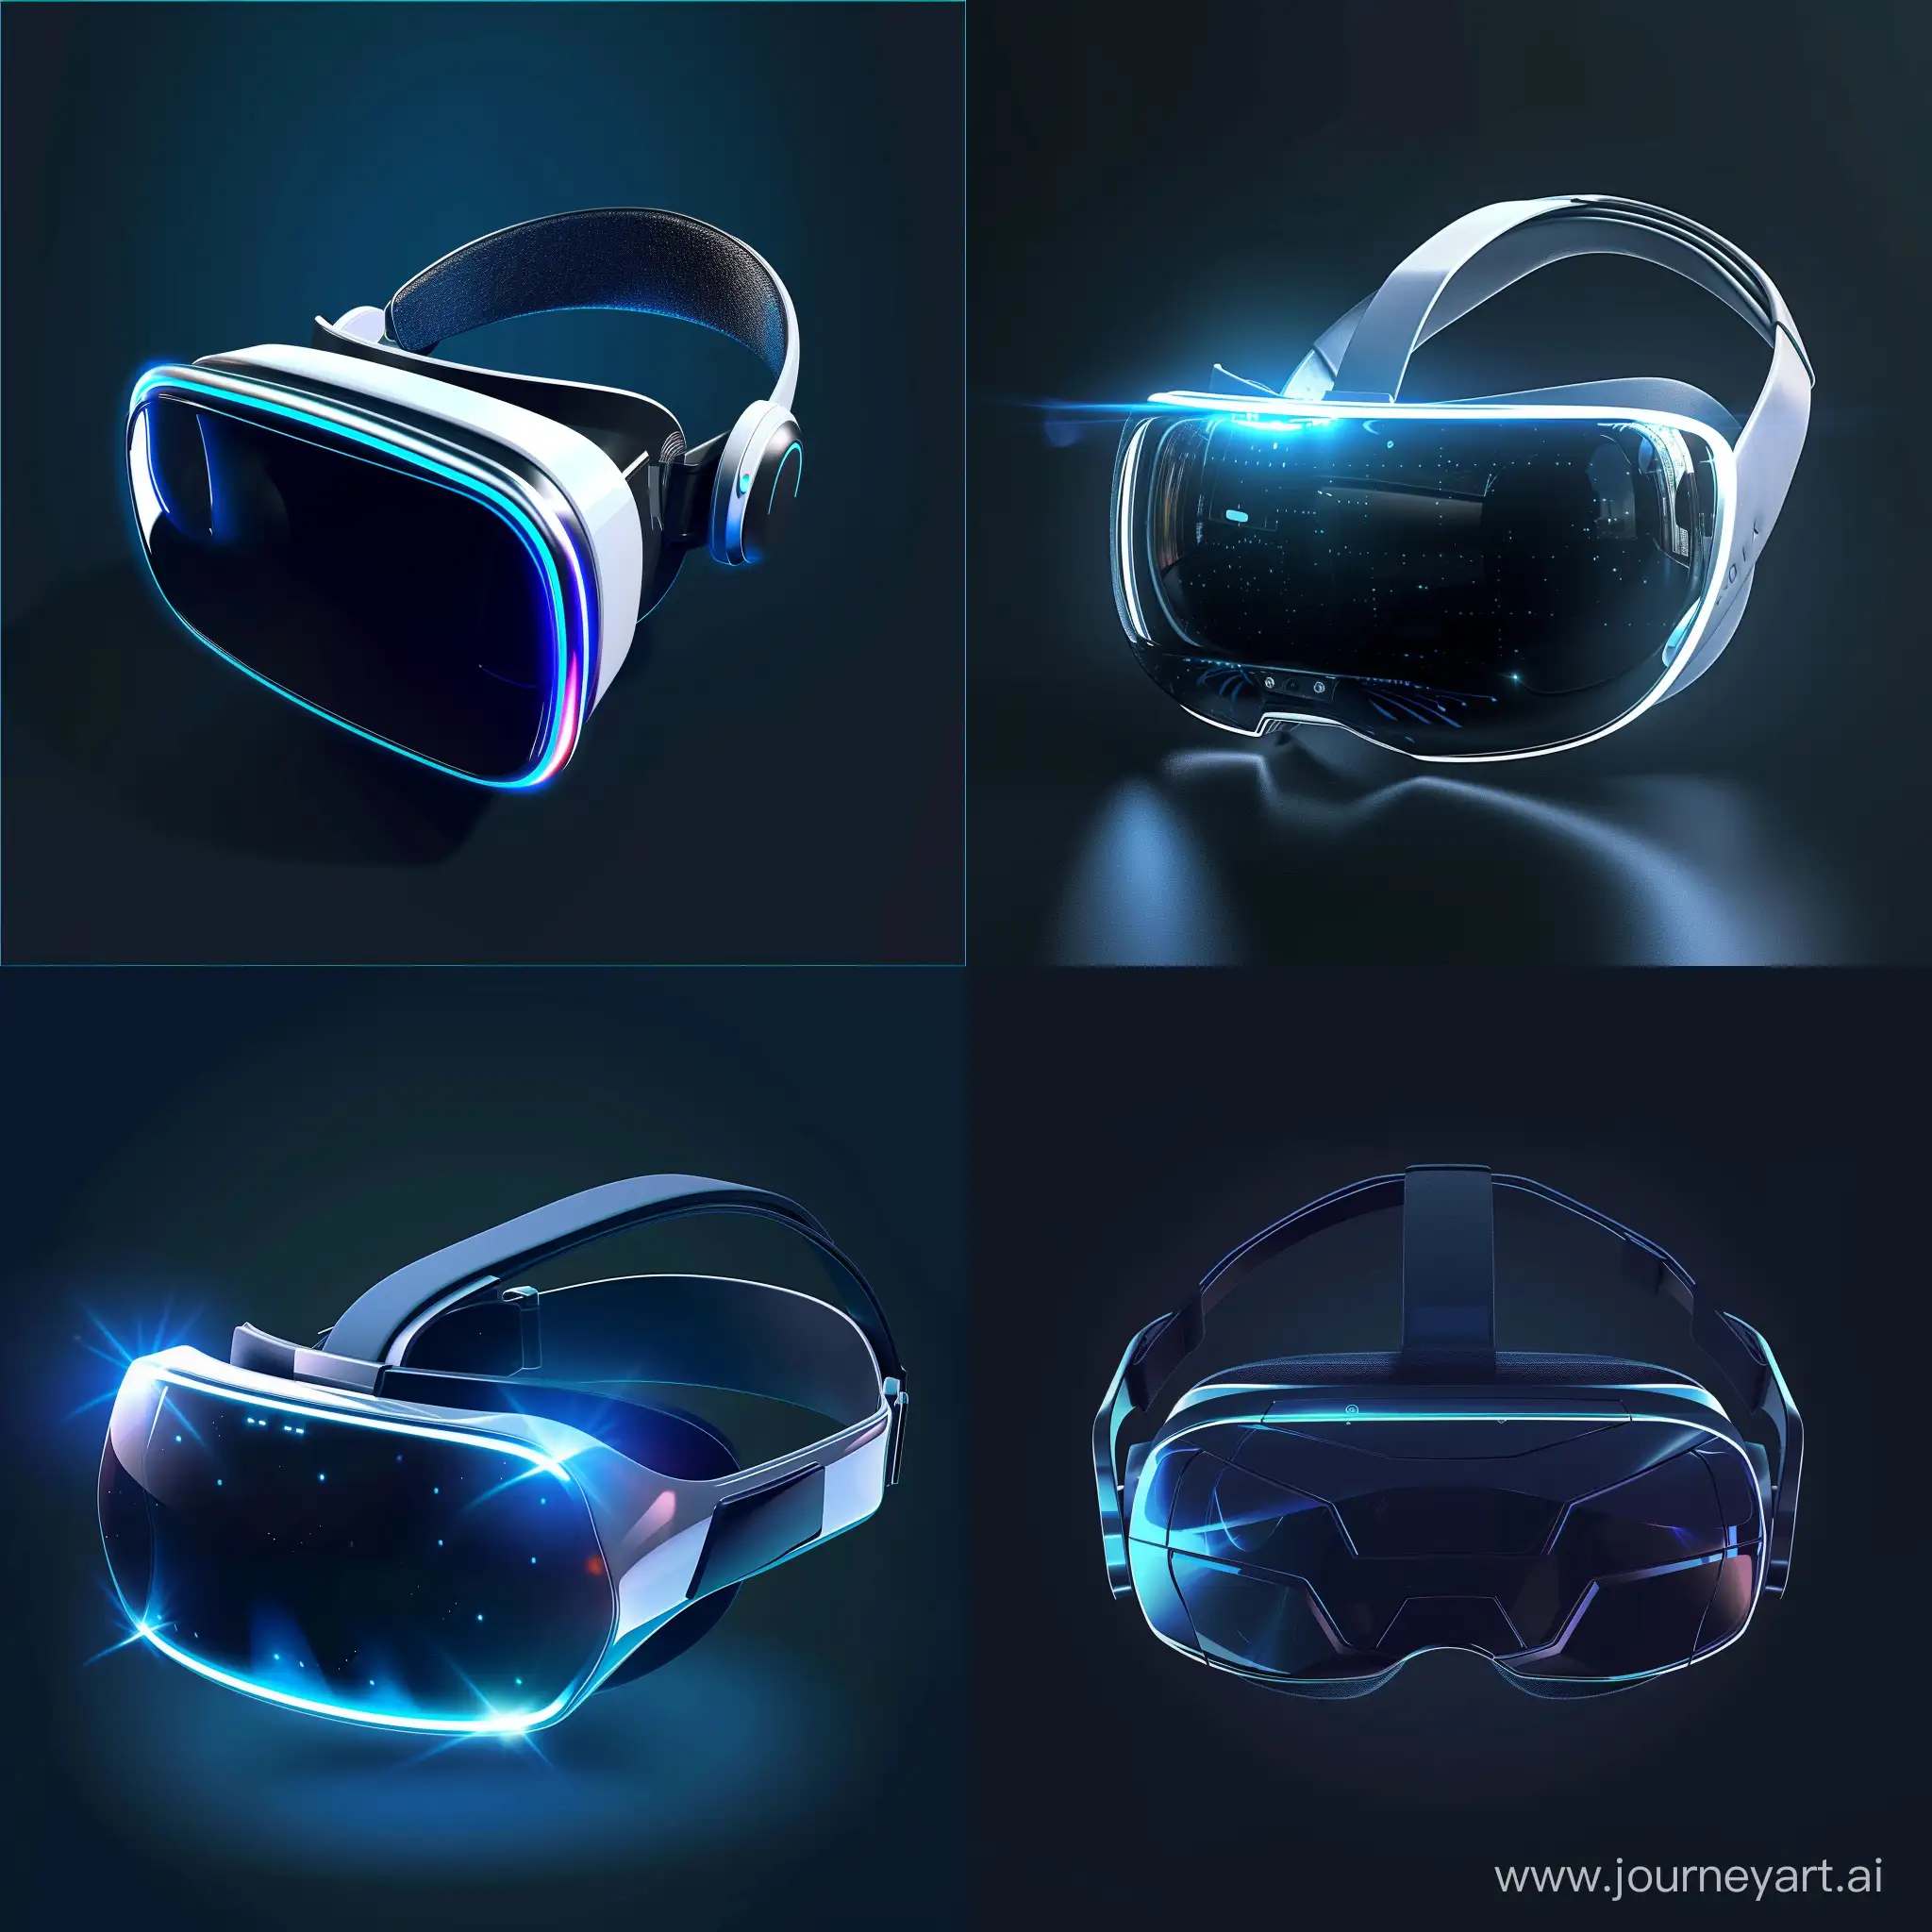 Futuristic VR headset, in futuristic style